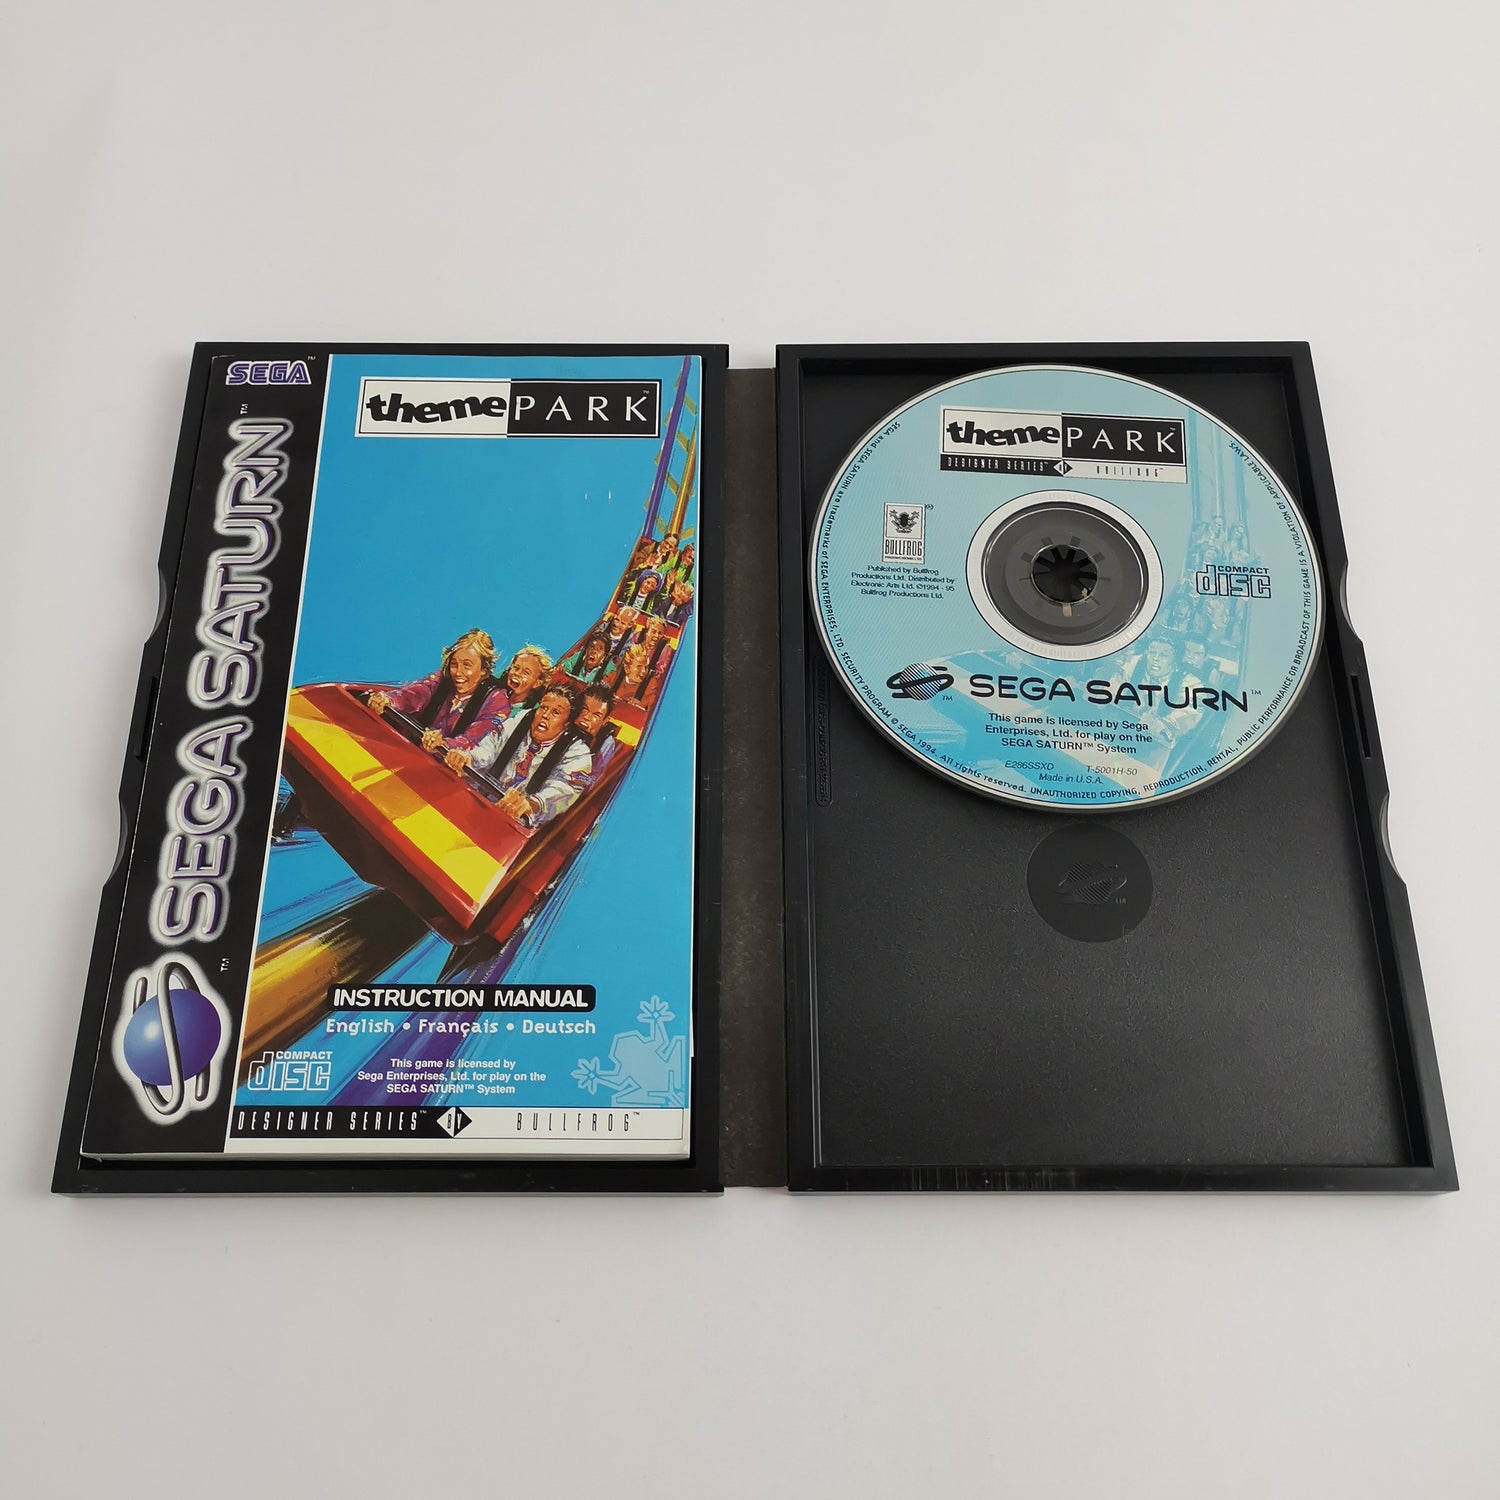 Sega Saturn Game: Theme Park | SegaSaturn PAL - original packaging